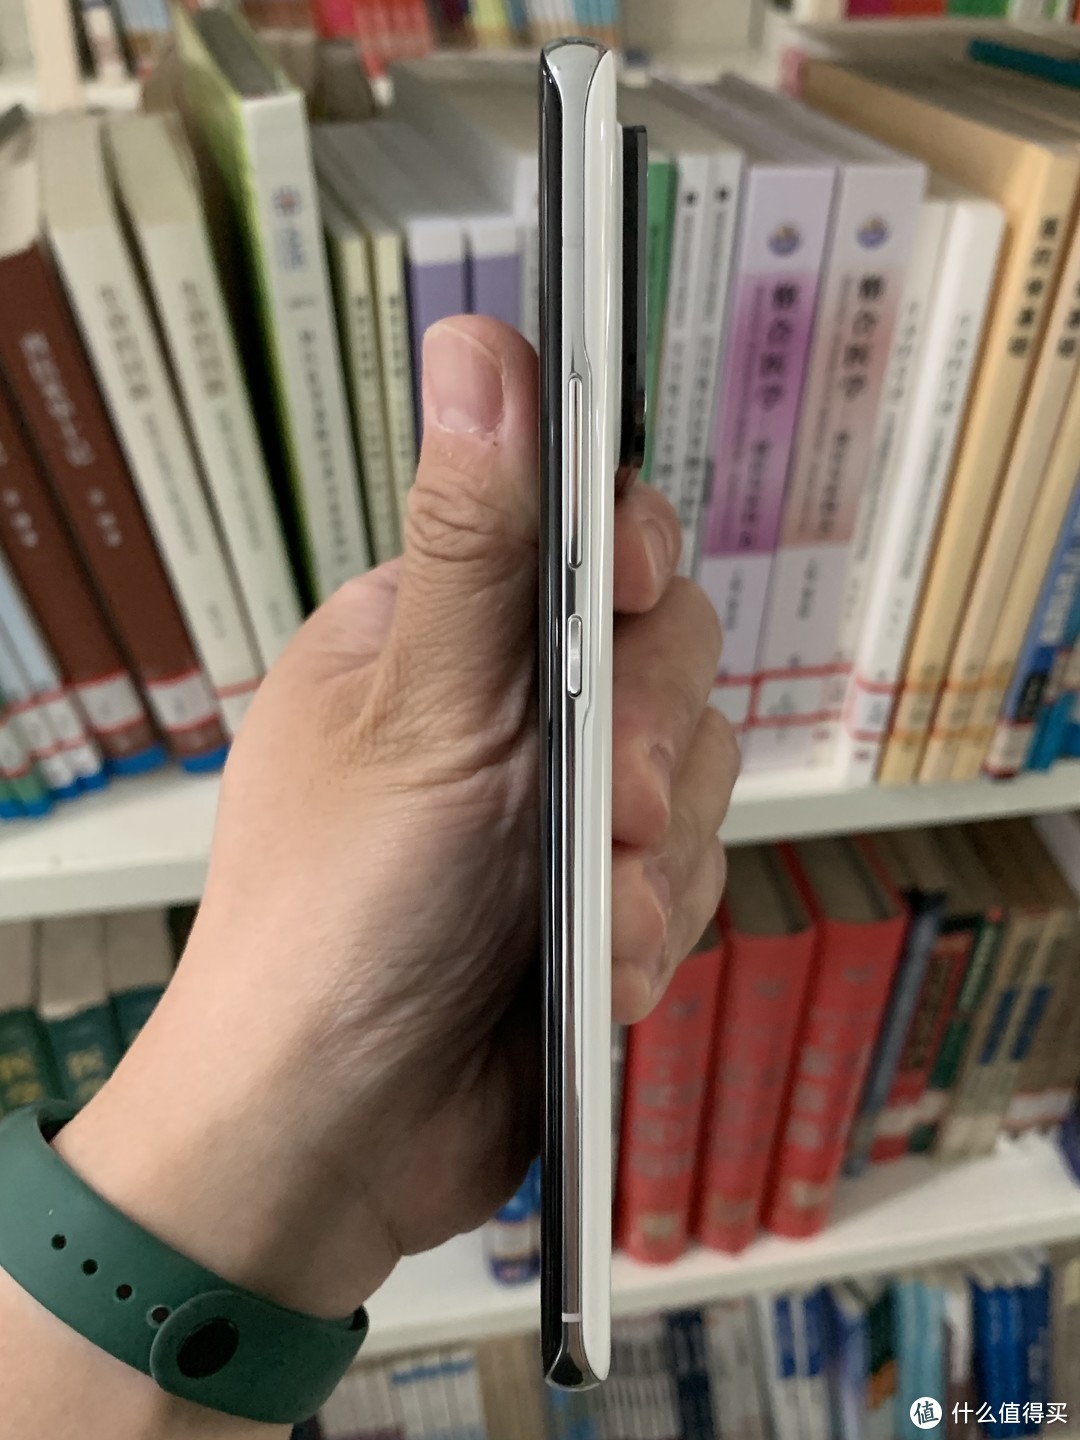 图书馆猿の安卓之光：小米11 Ultra 简单晒